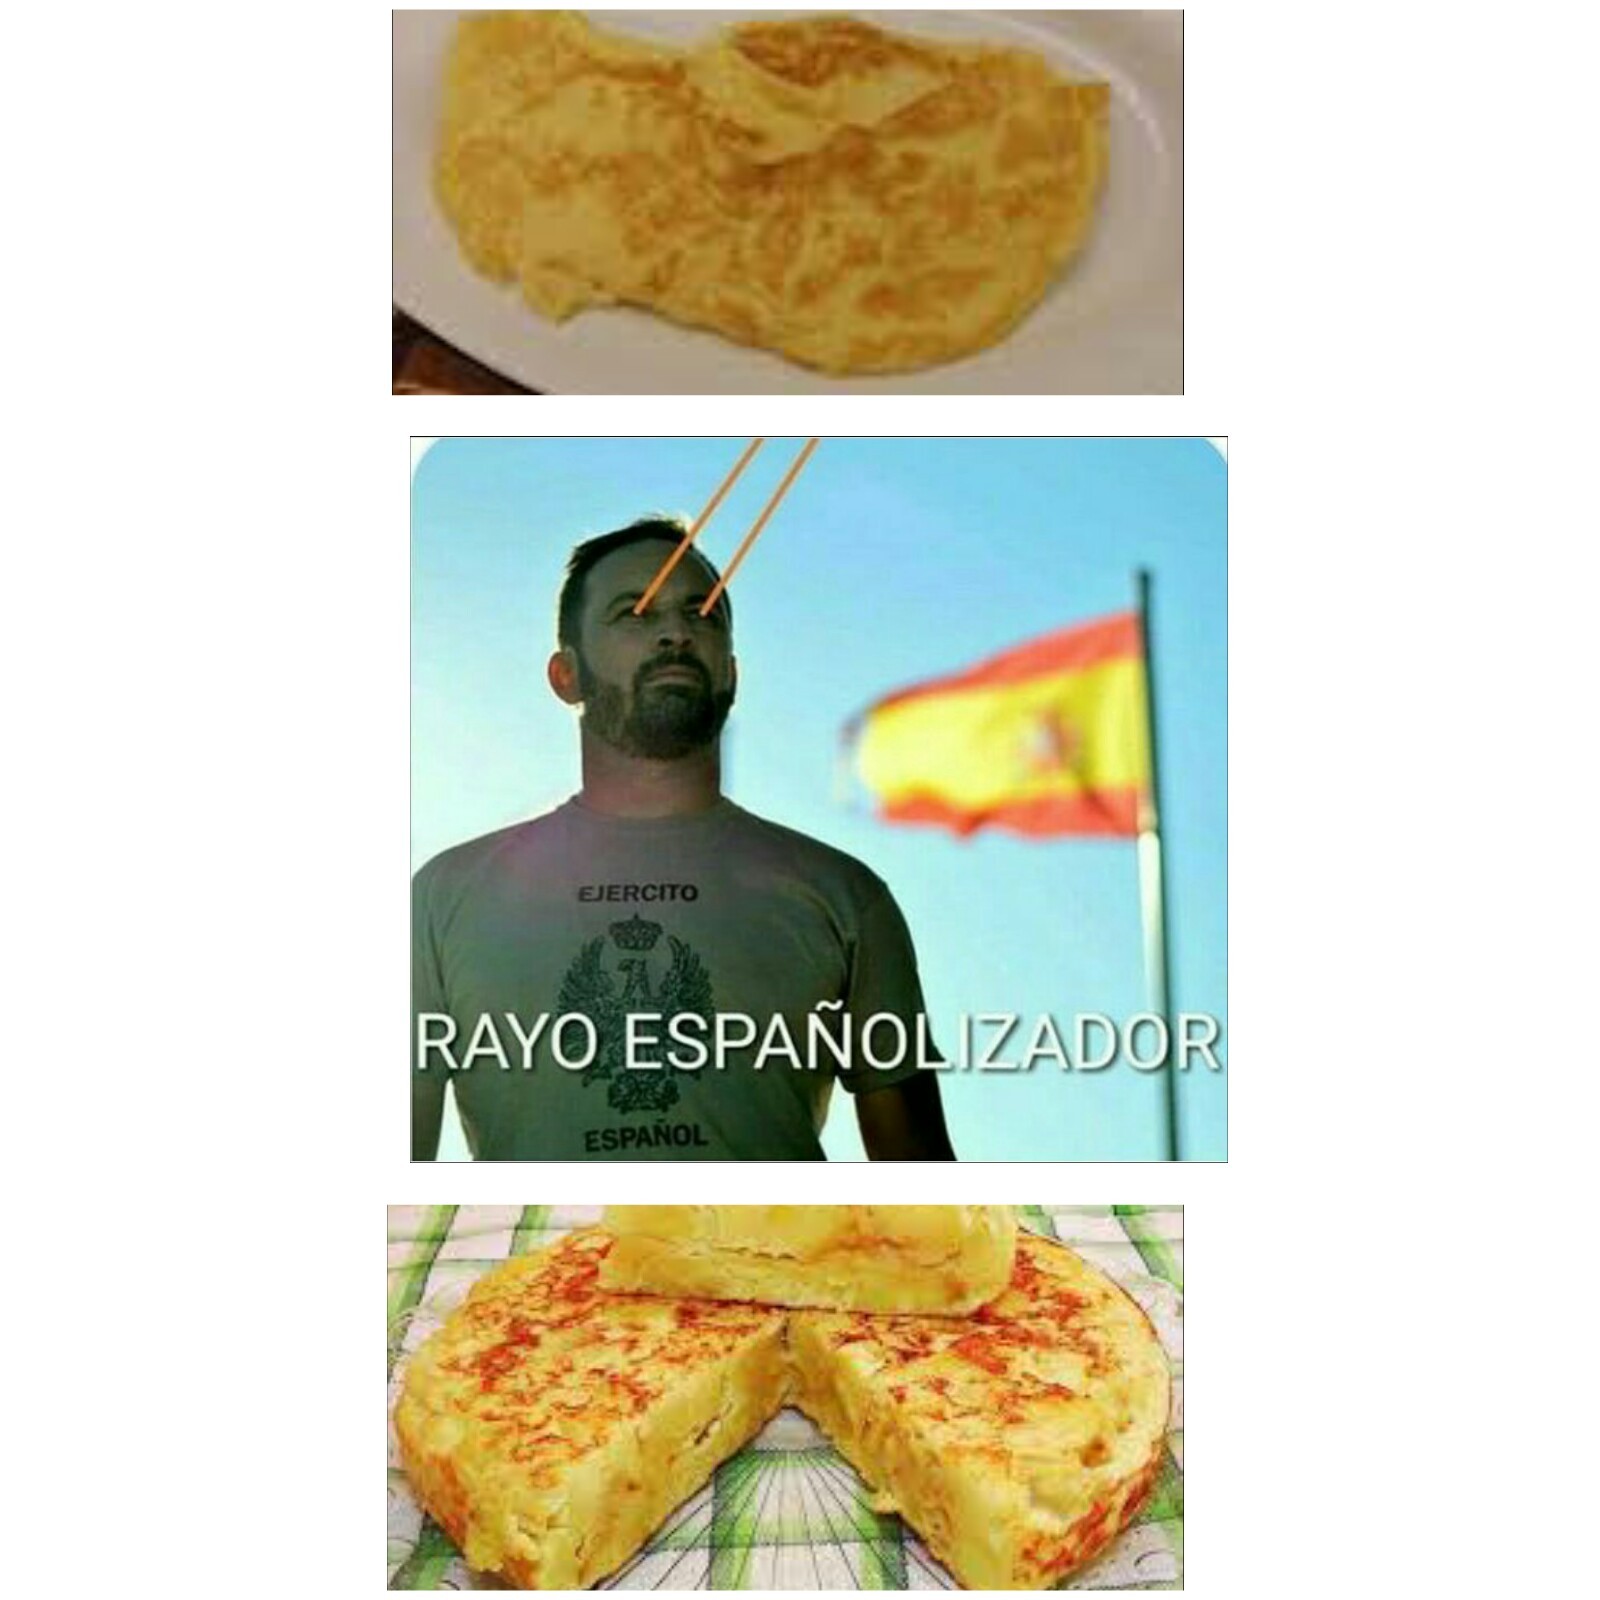 Viva la tortilla de patata - meme